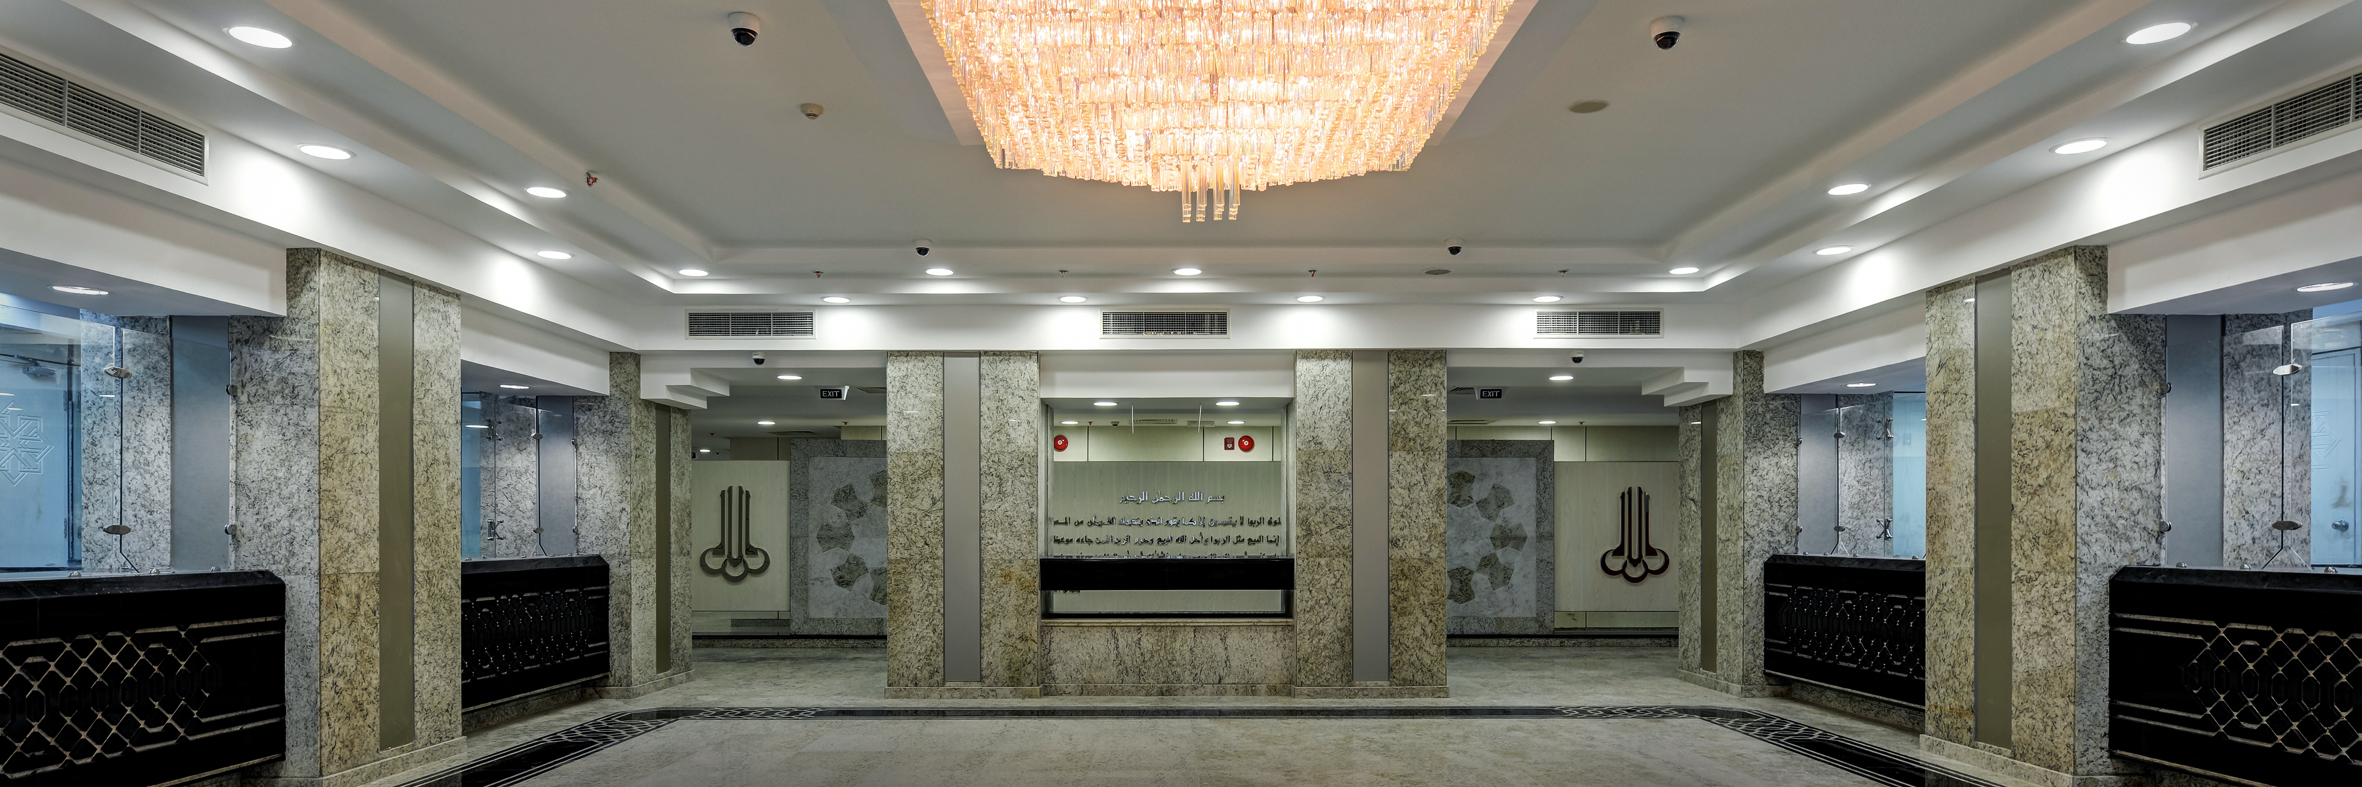 Faisal Bank - Alexandria Branch